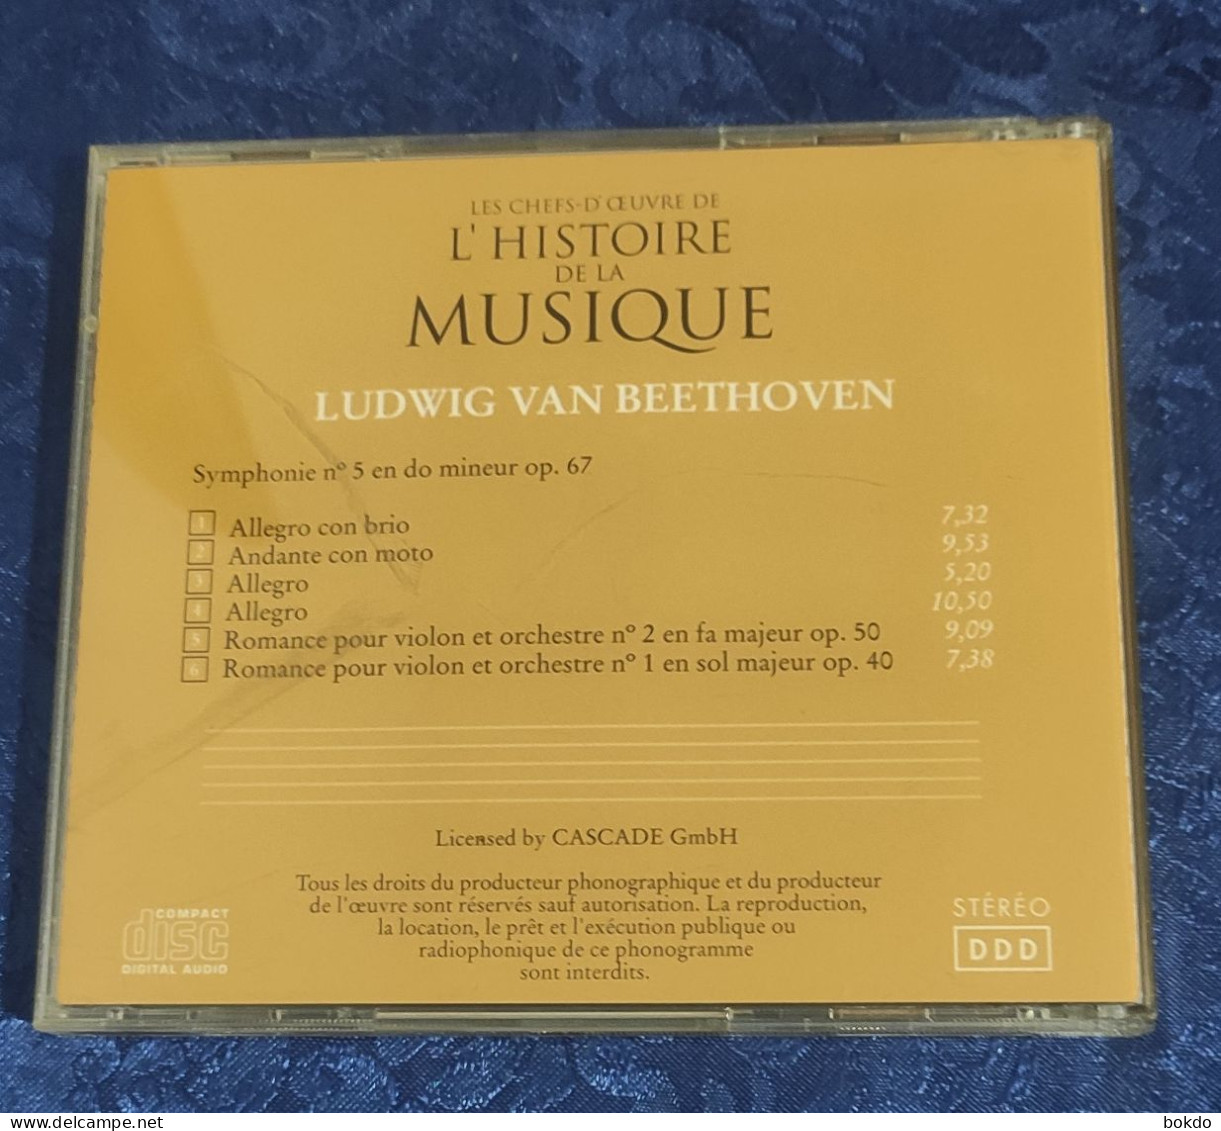 Ludwig Van Beethoven - Symphonie N° 5 - Romances Pour Violon N) 1 Et 2 - Classica